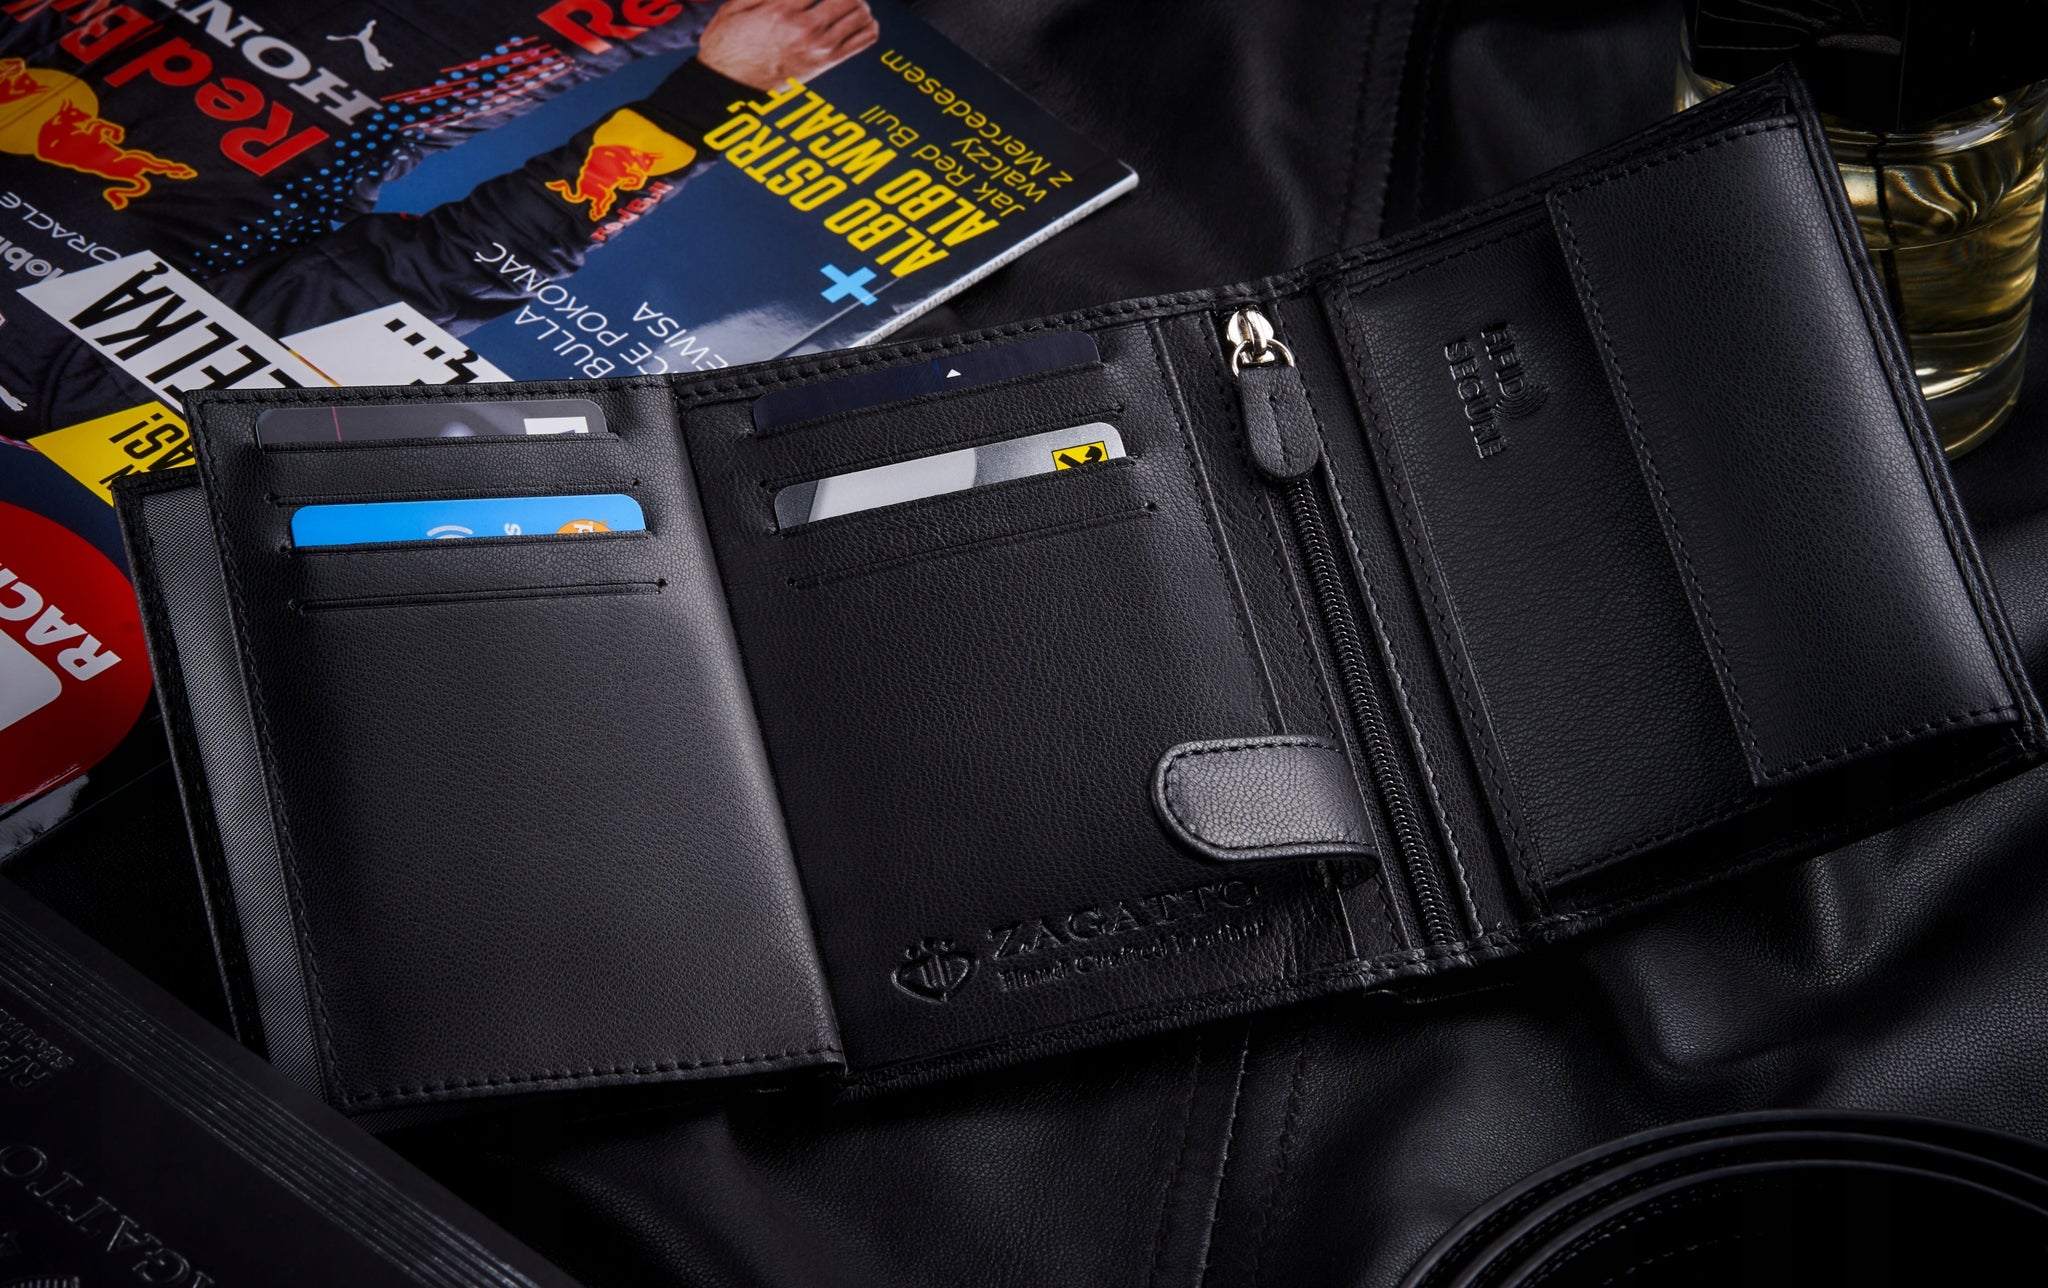 Zagatto vyriška odinė piniginė su RFID kortelės apsauga